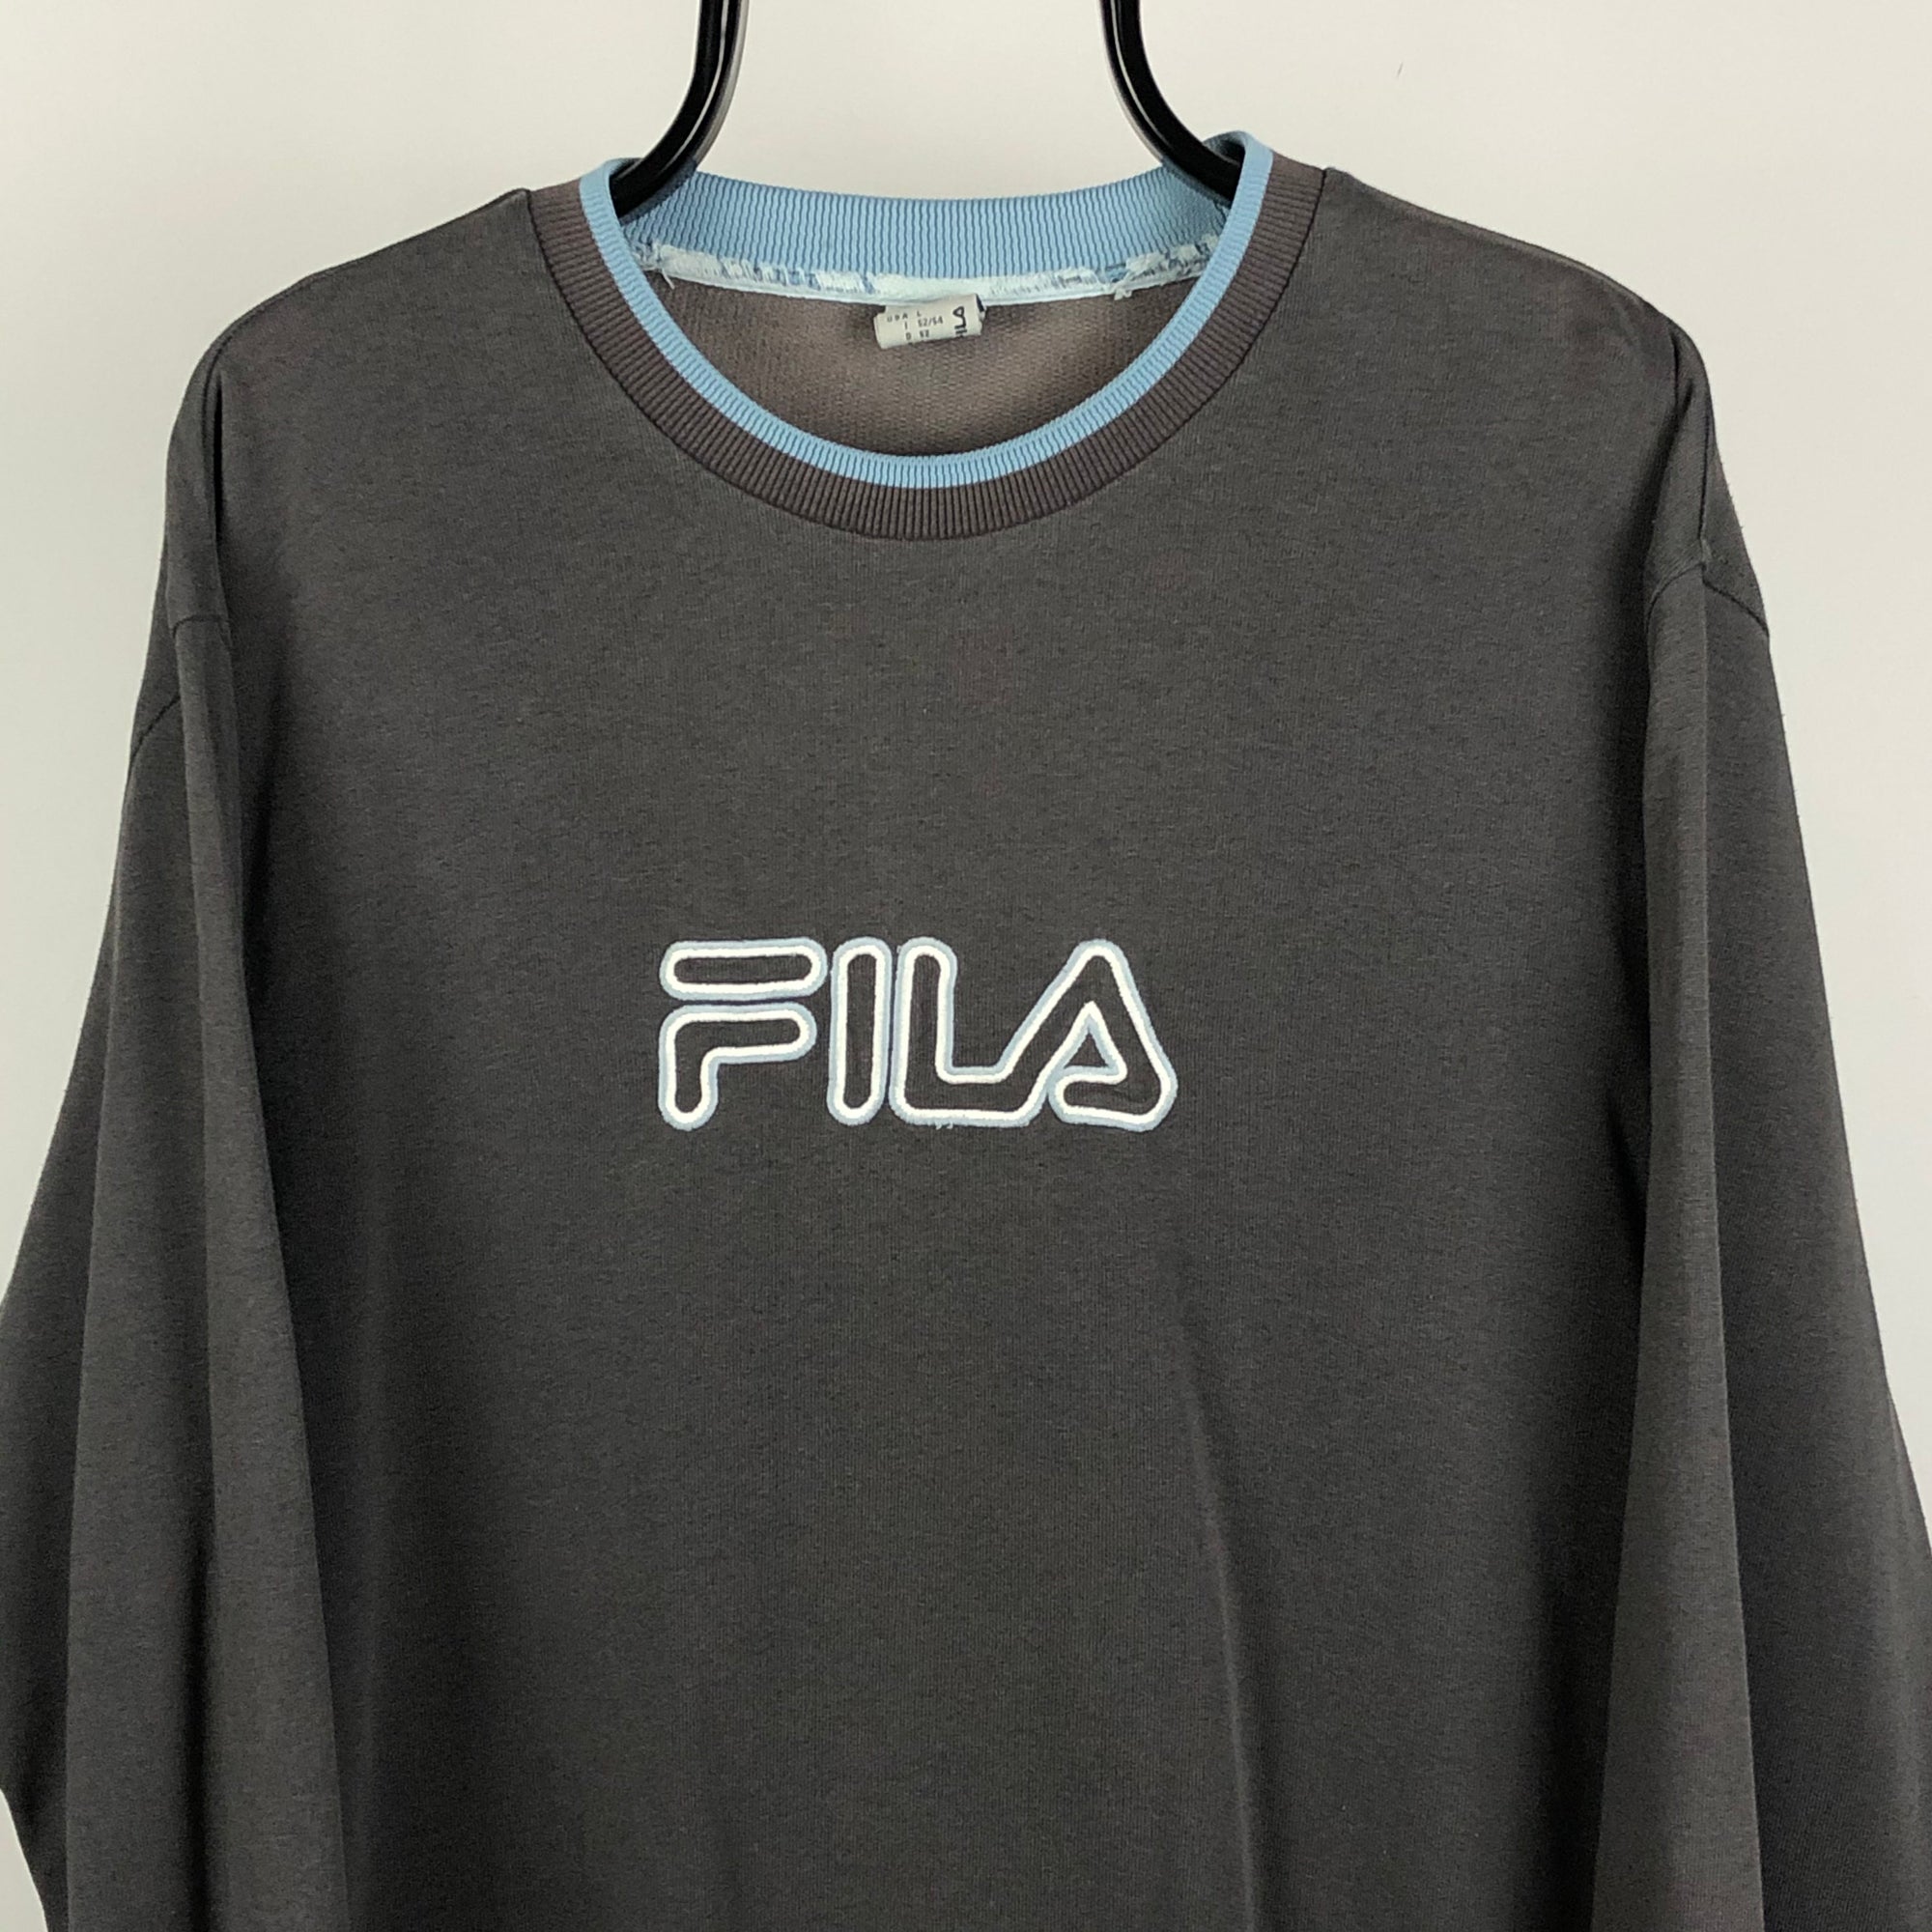 Vintage Fila Spellout Sweatshirt in Charcoal/Blue - Men's Large/Women's XL